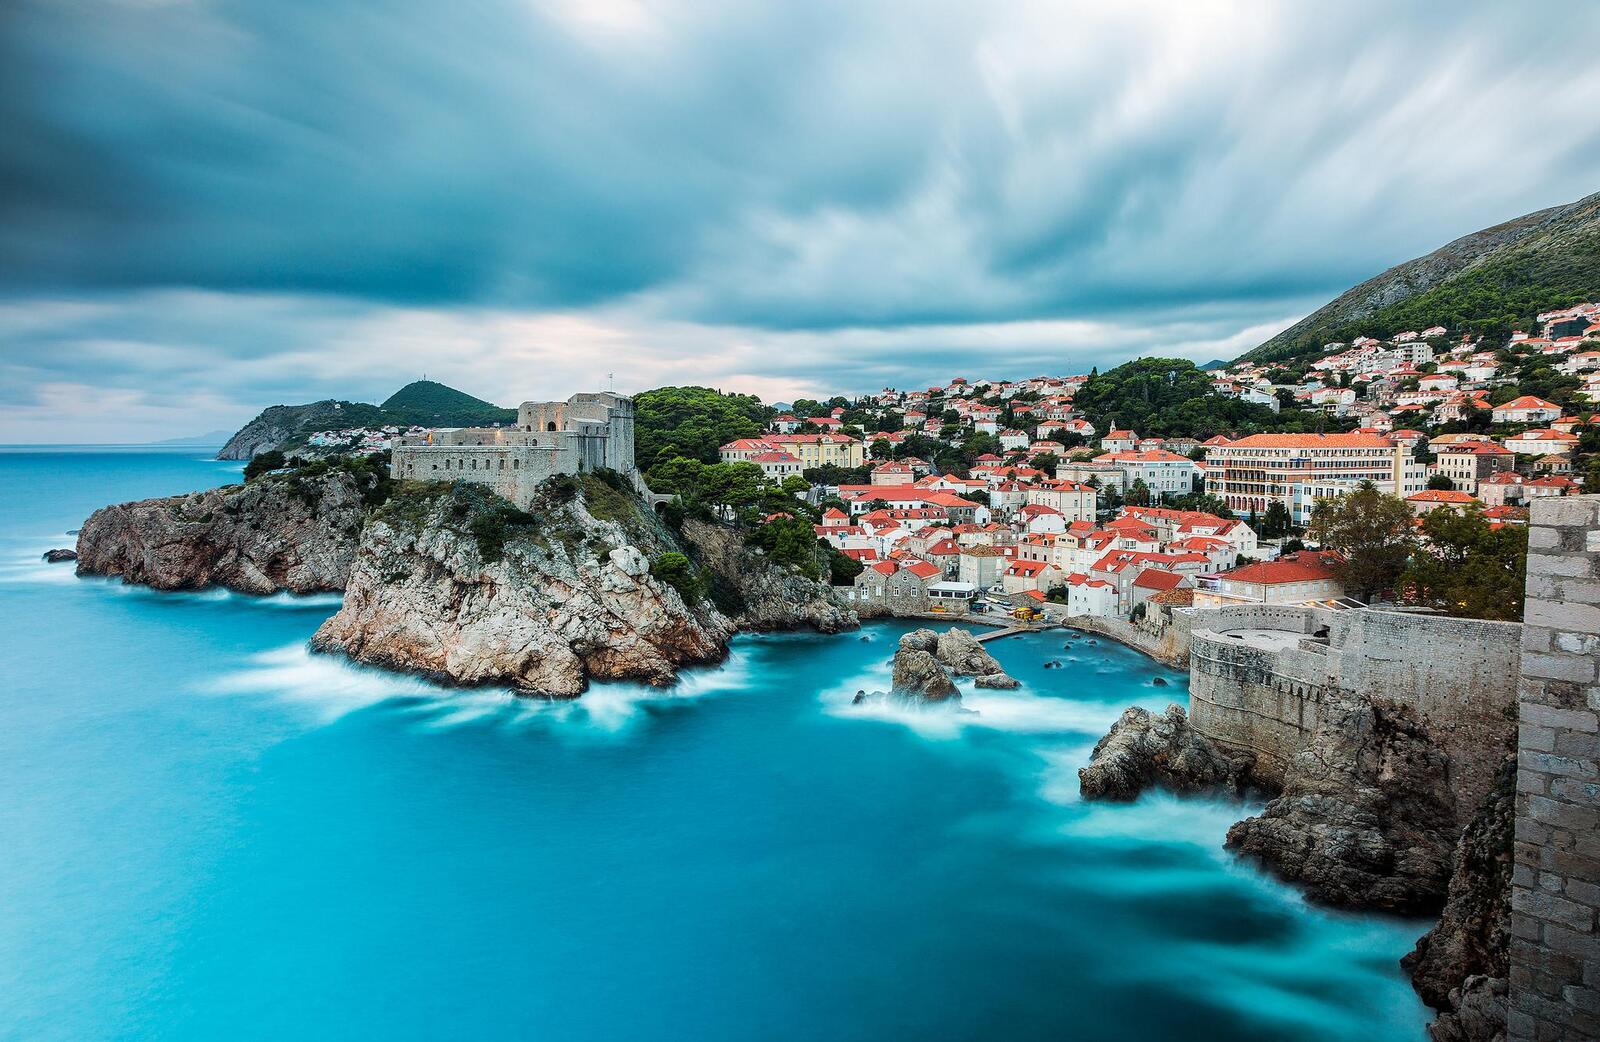 Обои Дубровник море Хорватия на рабочий стол